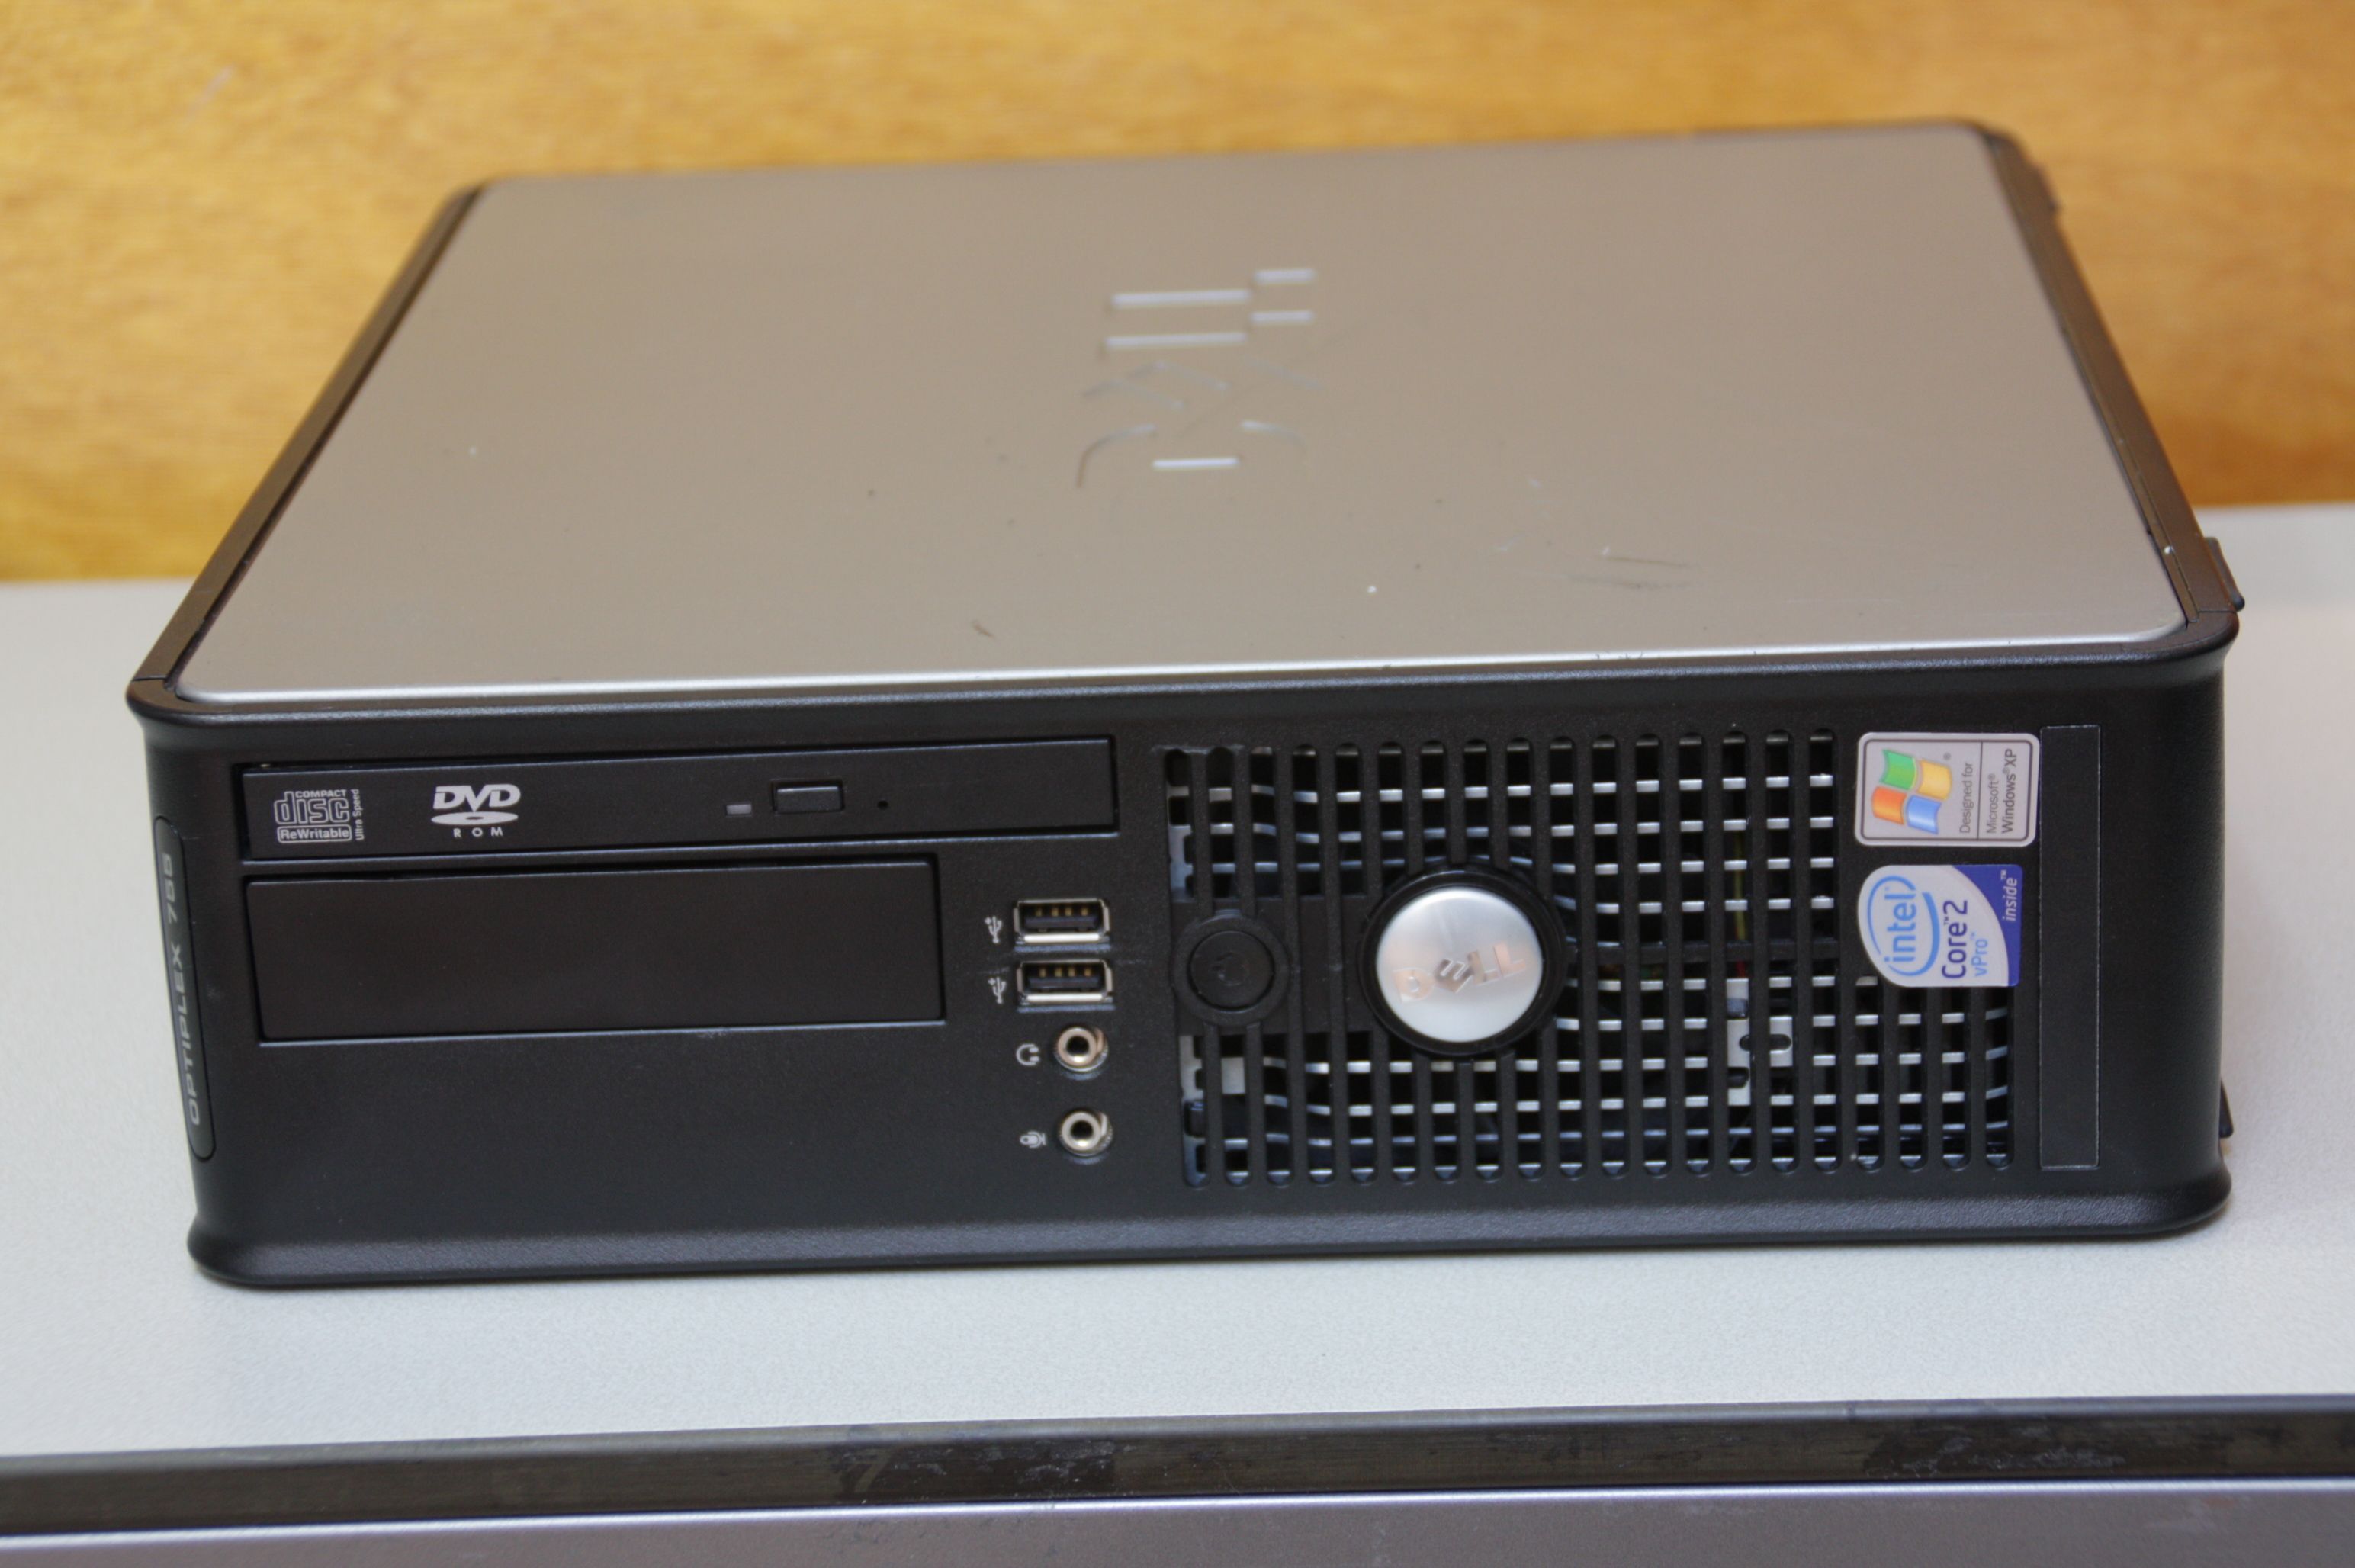 Rechner PC Compuer Dell Optiplex 755 Core 2 Duo E6550 2x 2,33 GHz 2GB